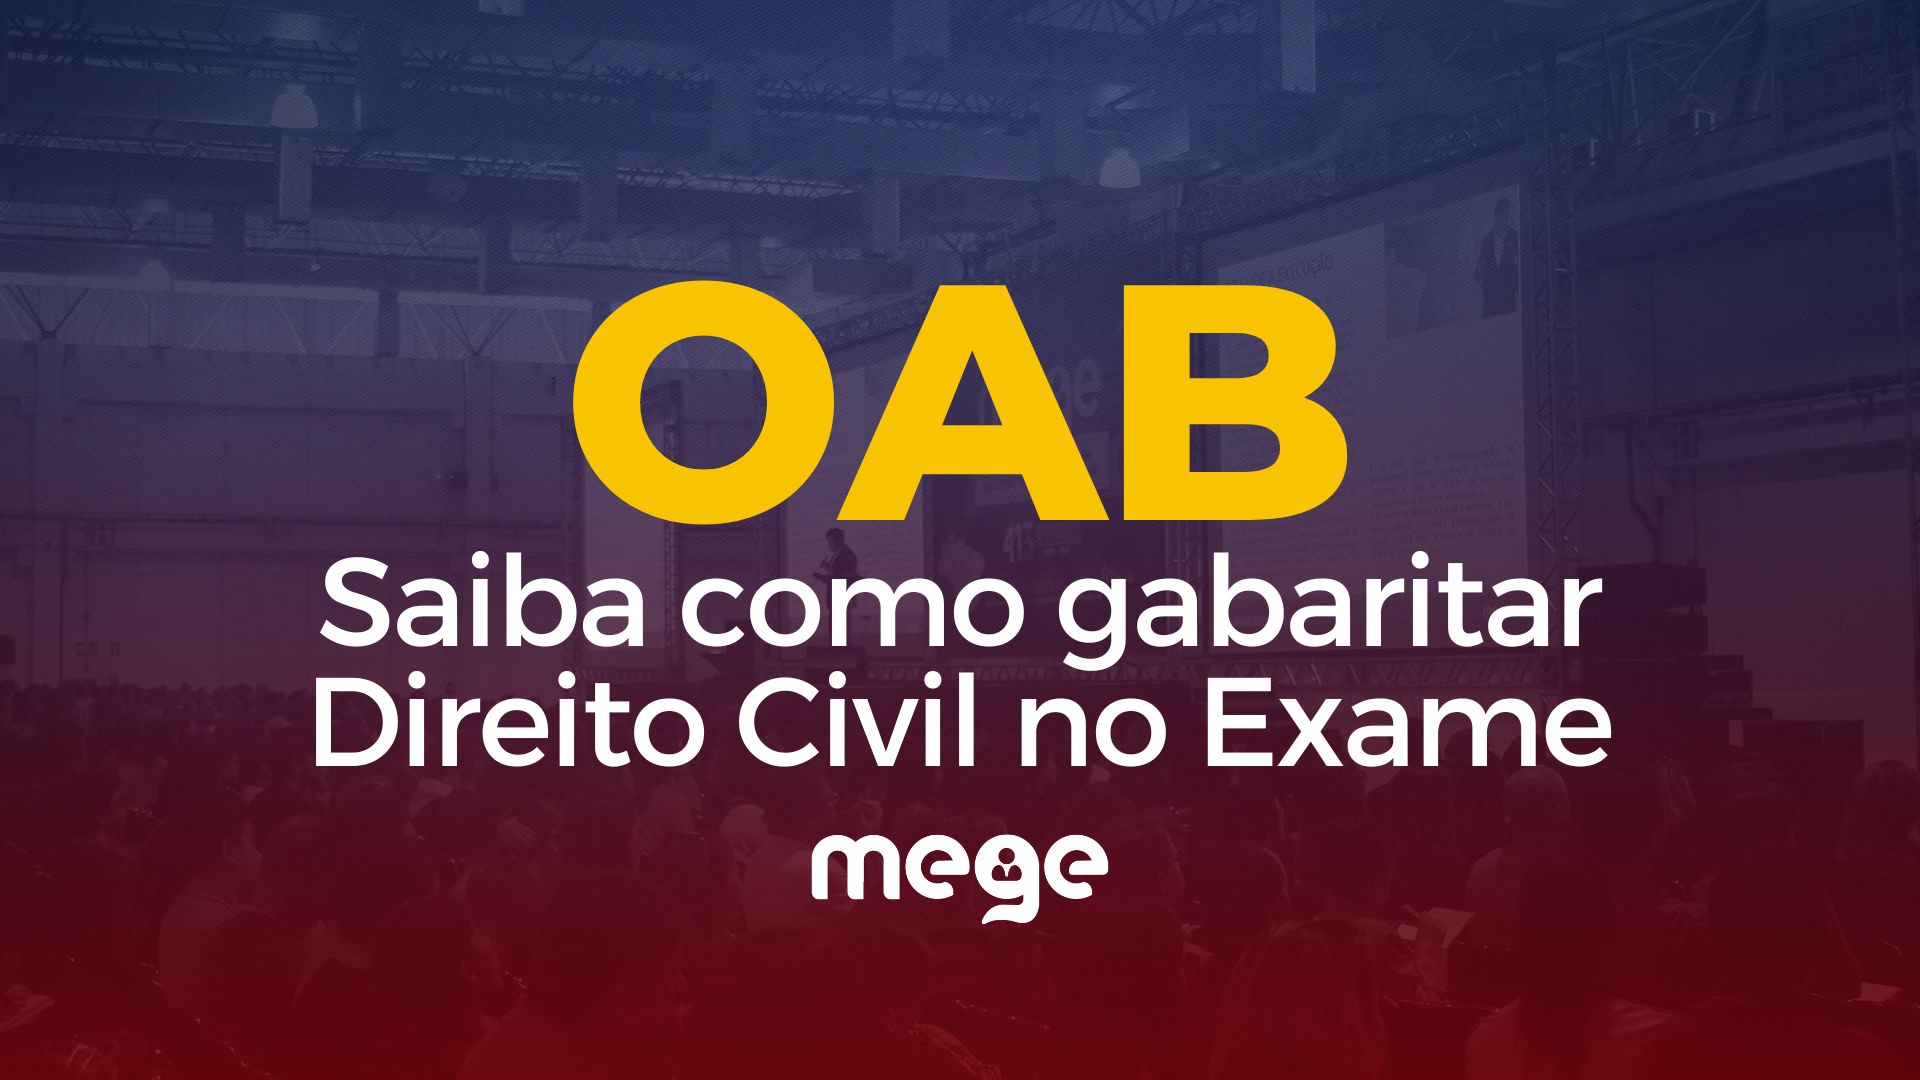 OAB: Saiba como gabaritar Direito Civil no Exame